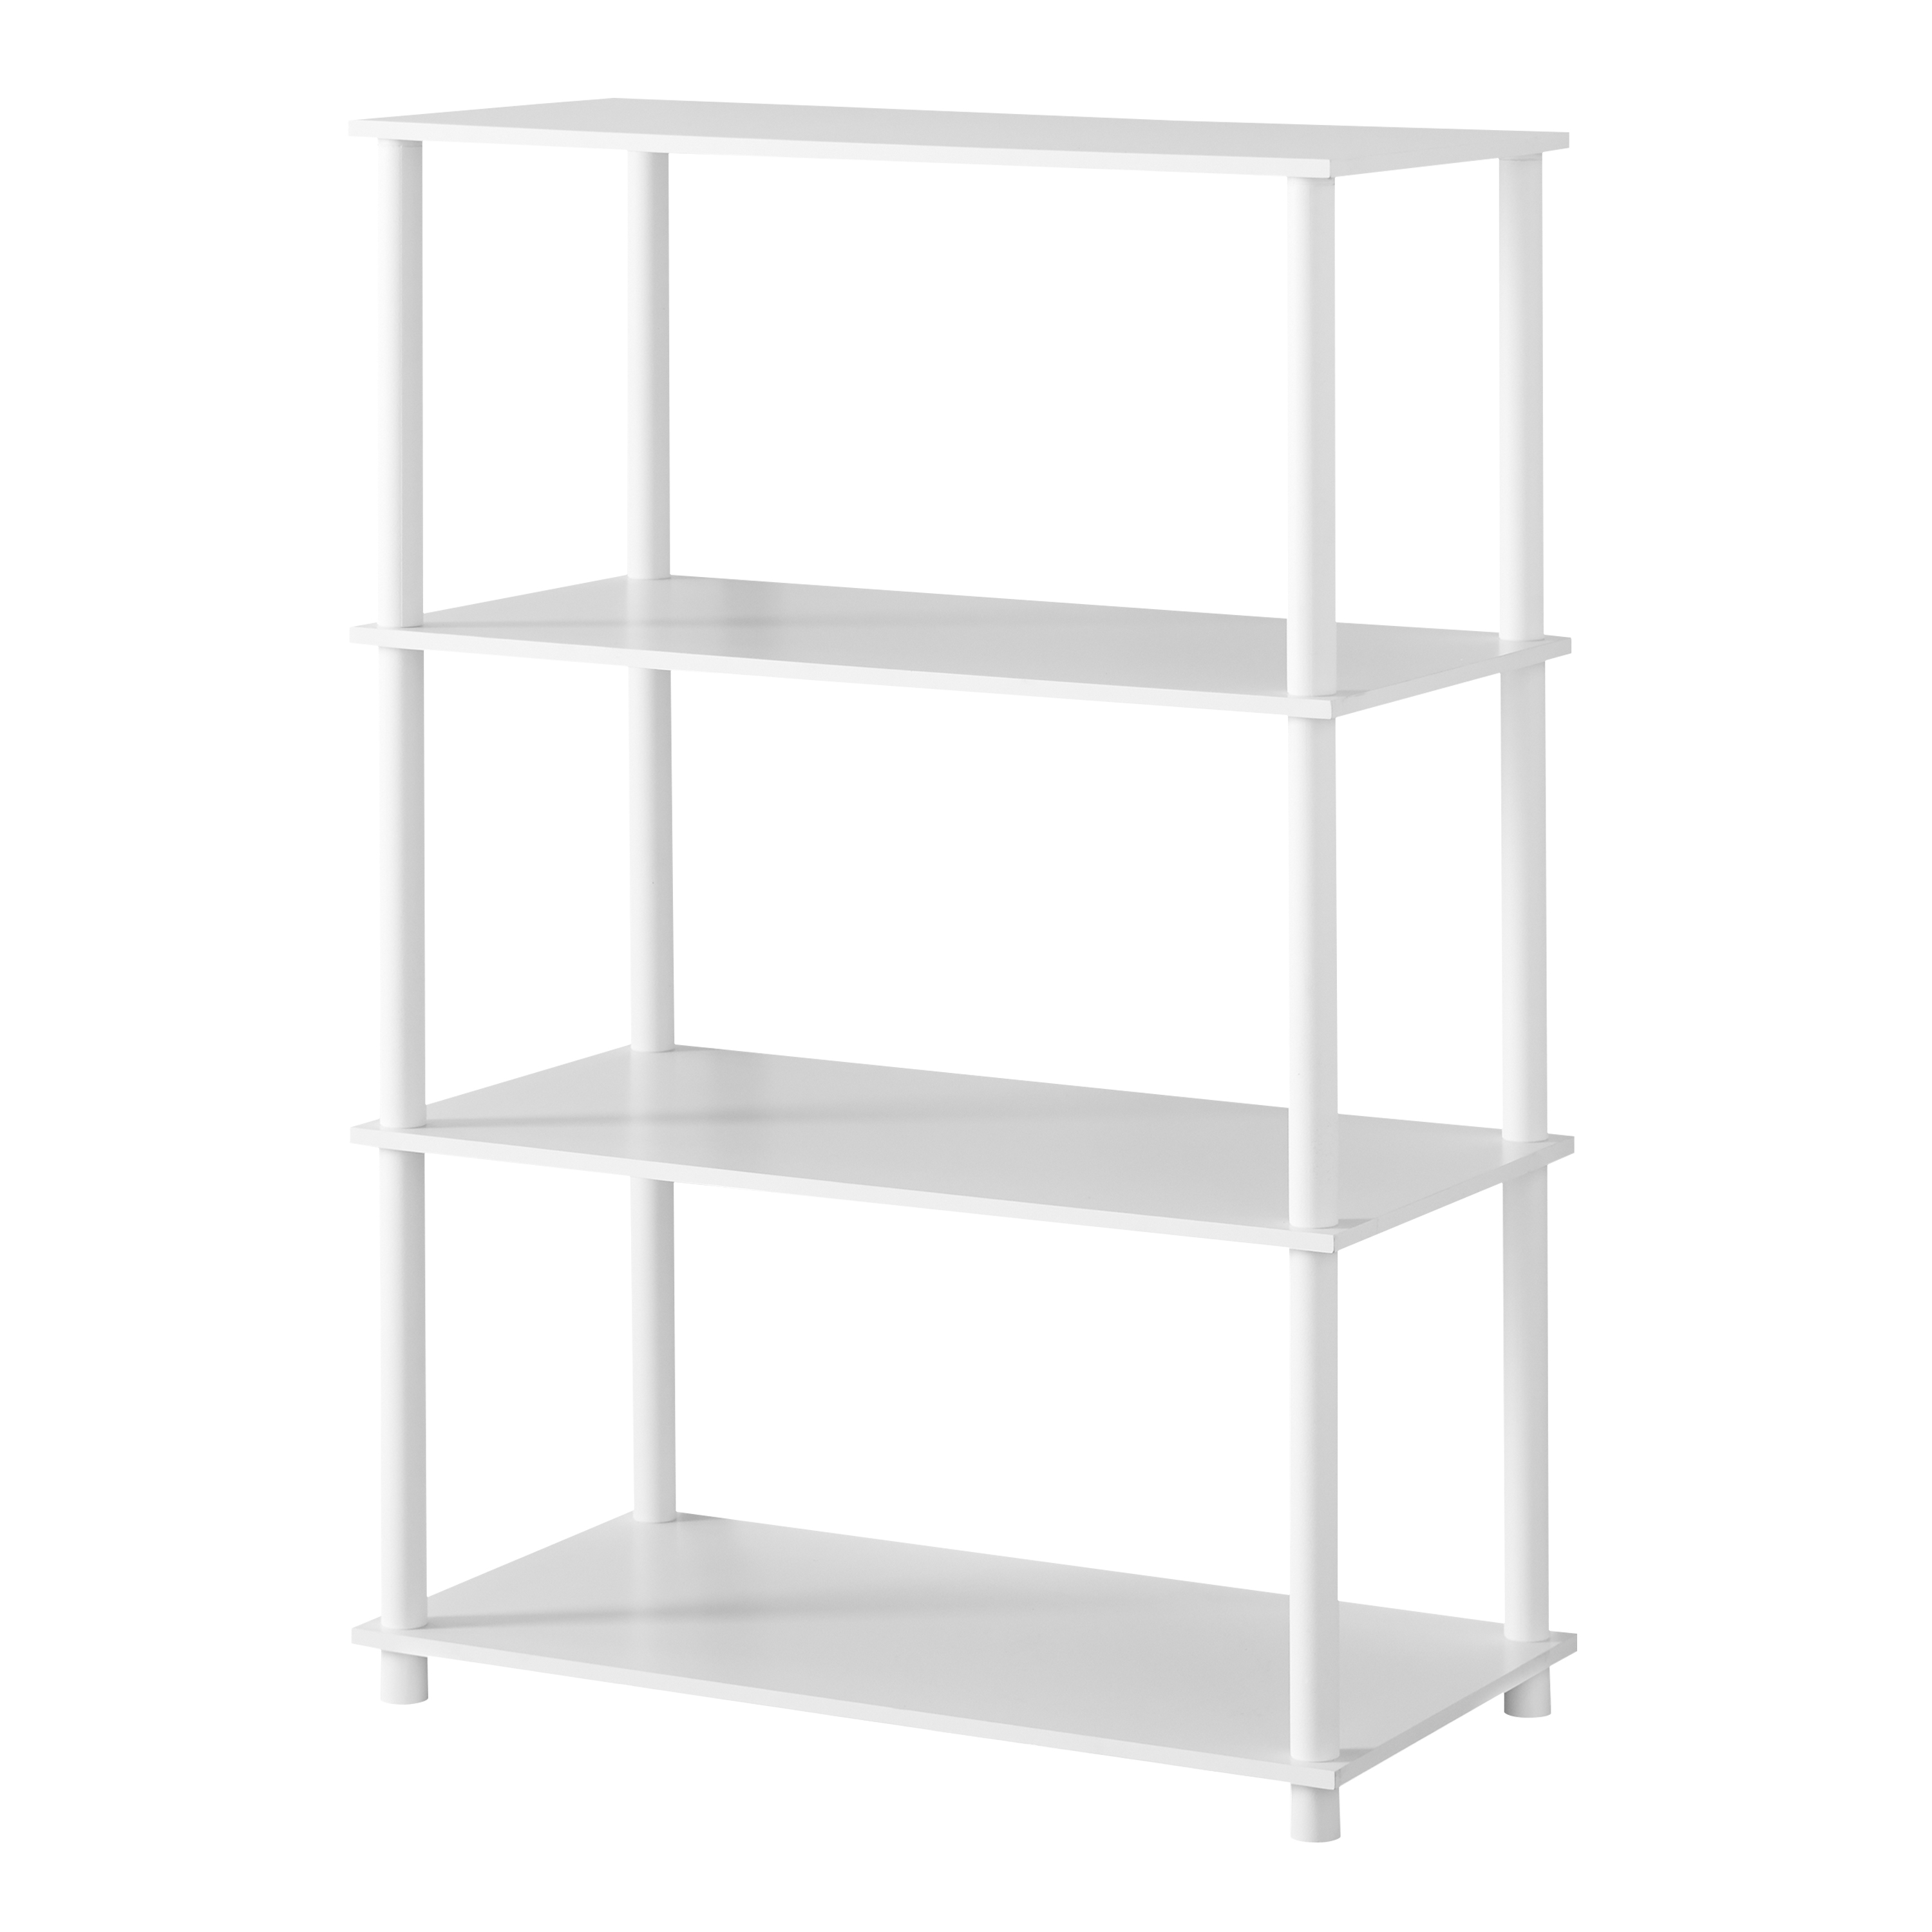 Mainstays No Tools 4-Shelf Storage Bookcase, White - image 4 of 5